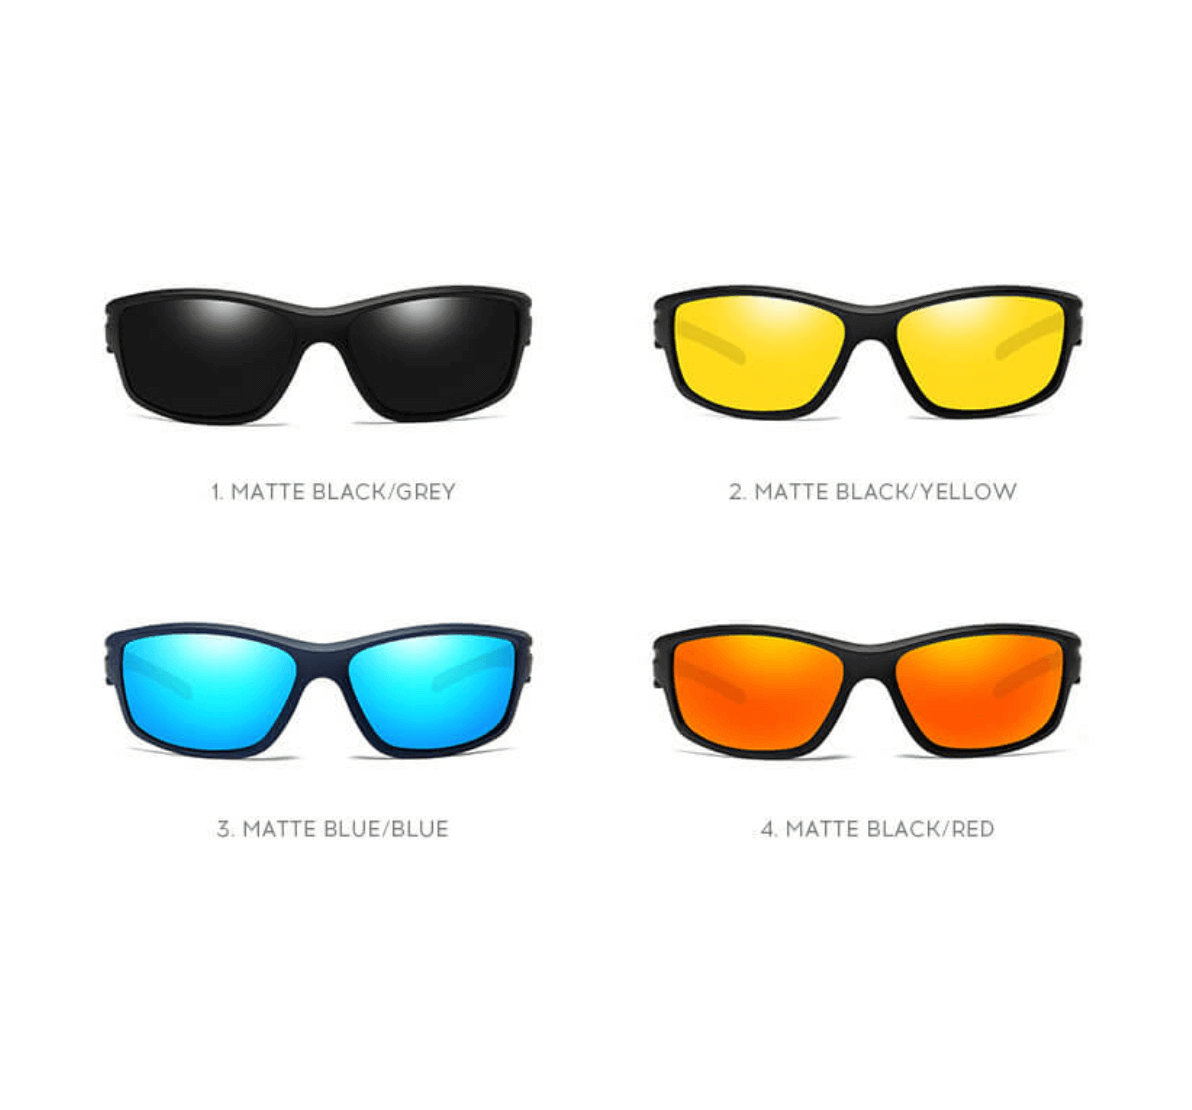 Custom Polarized Sunglasses, polarized fishing sunglasses, custom logo polarized sunglasses, custom sunglasses with logo, eyewear suppliers China